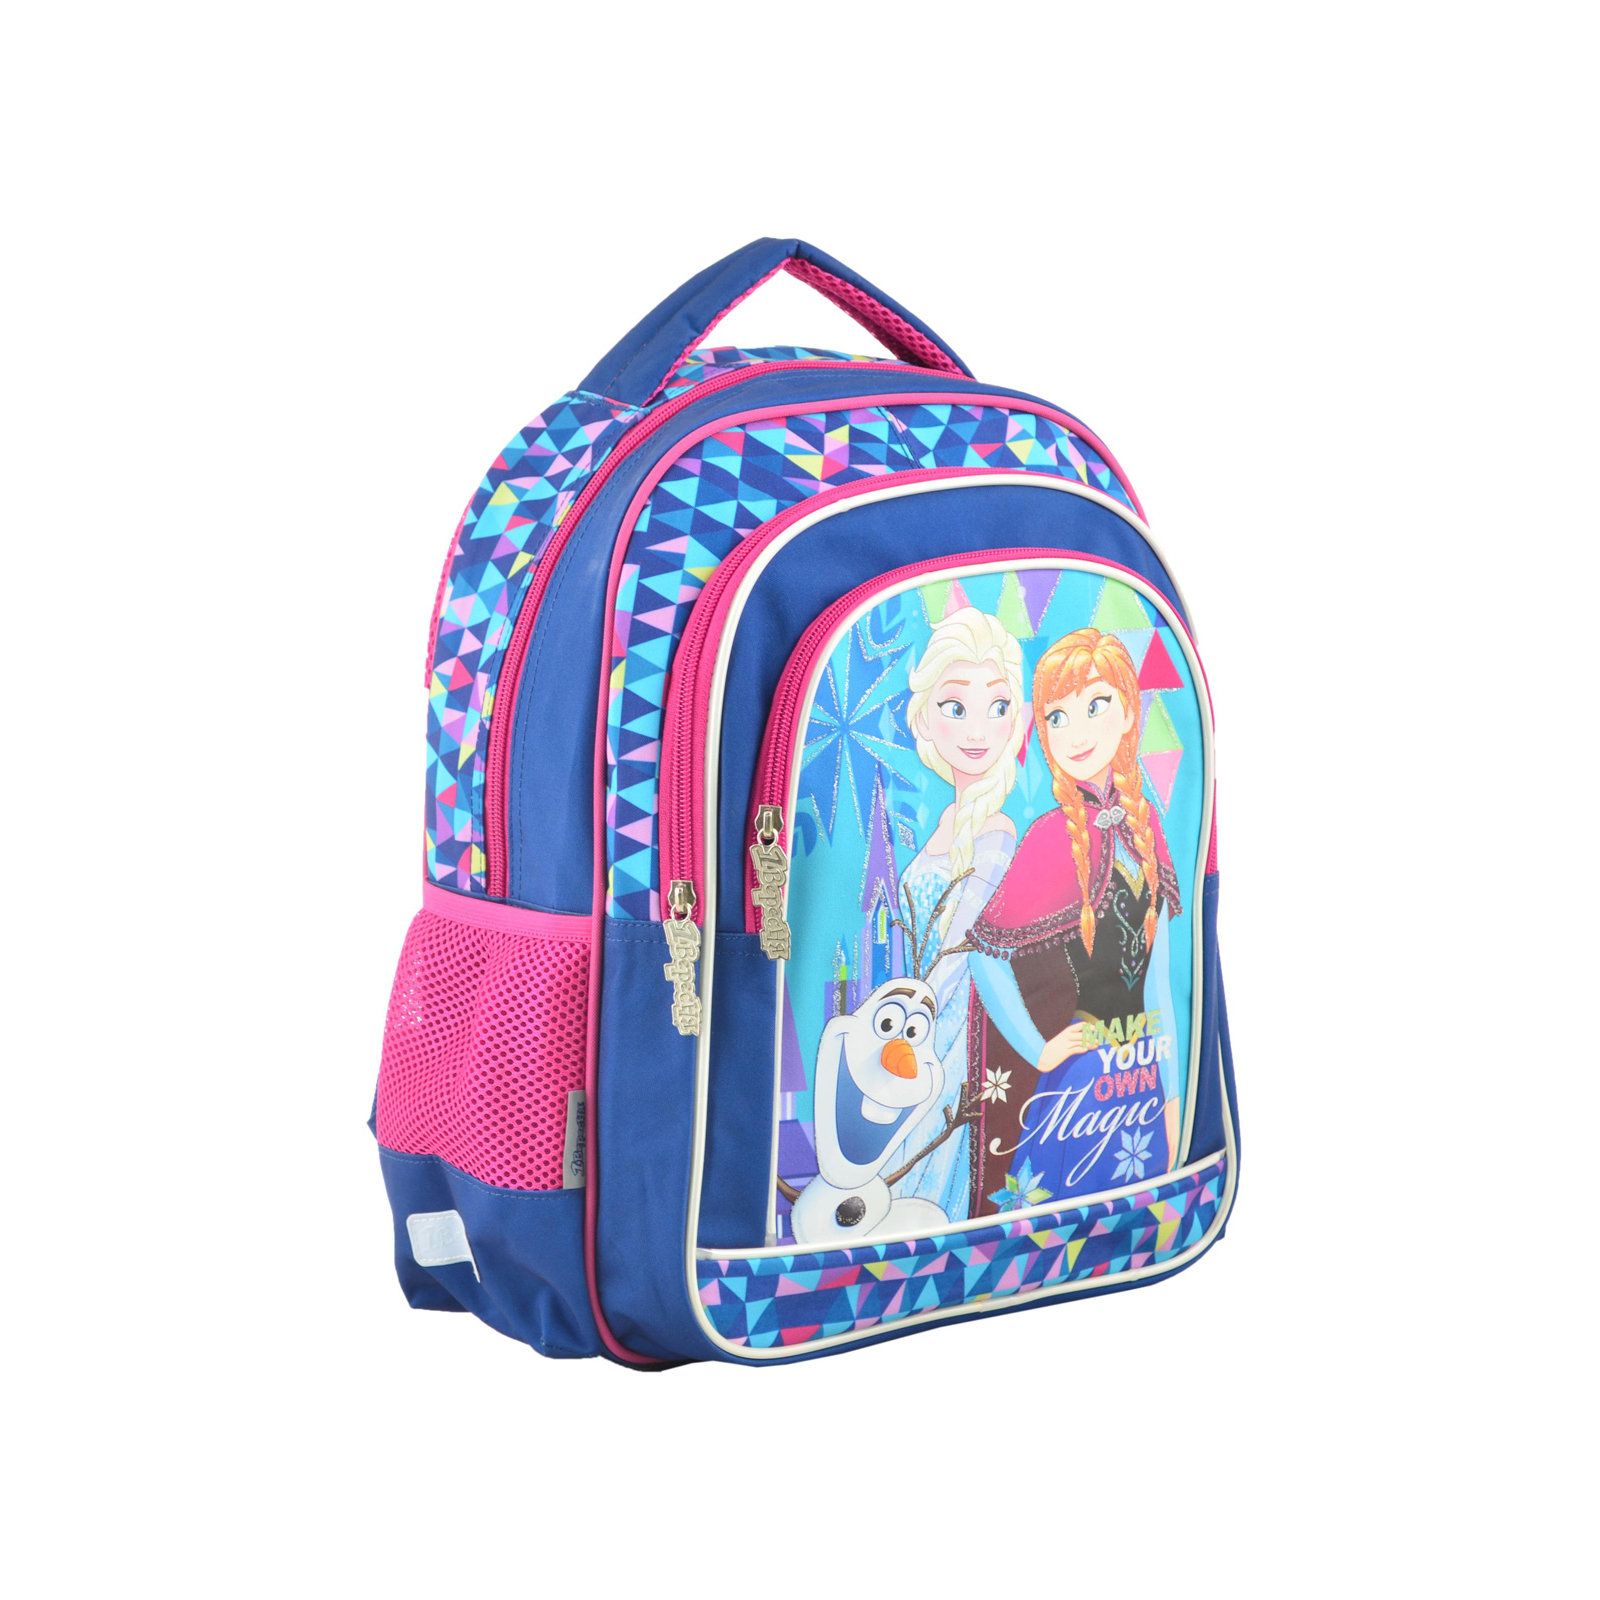 Рюкзак школьный 1 вересня S-22 Frozen (555269)